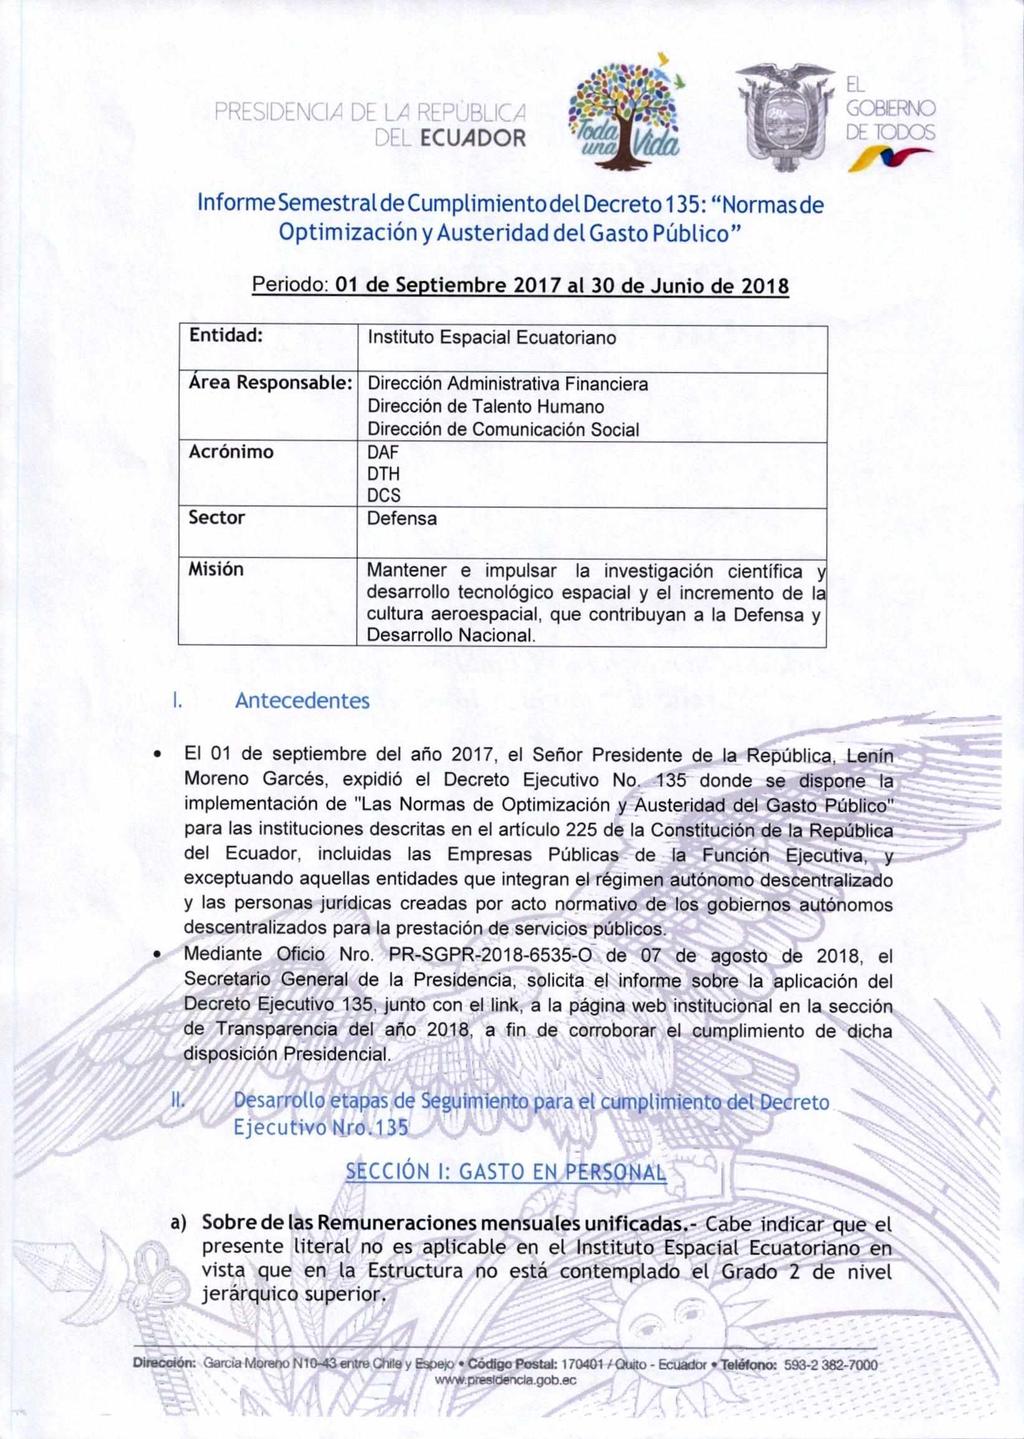 PRESIDENCIA DE LA P' DF' ECUADOR InformeSemestralde Cumplimiento del Decreto 1 35: "Normasde Optimización y Austeridad del Gasto Público" Periodo: 01 de Septiembre 2017 al 30 de Junio de 2018